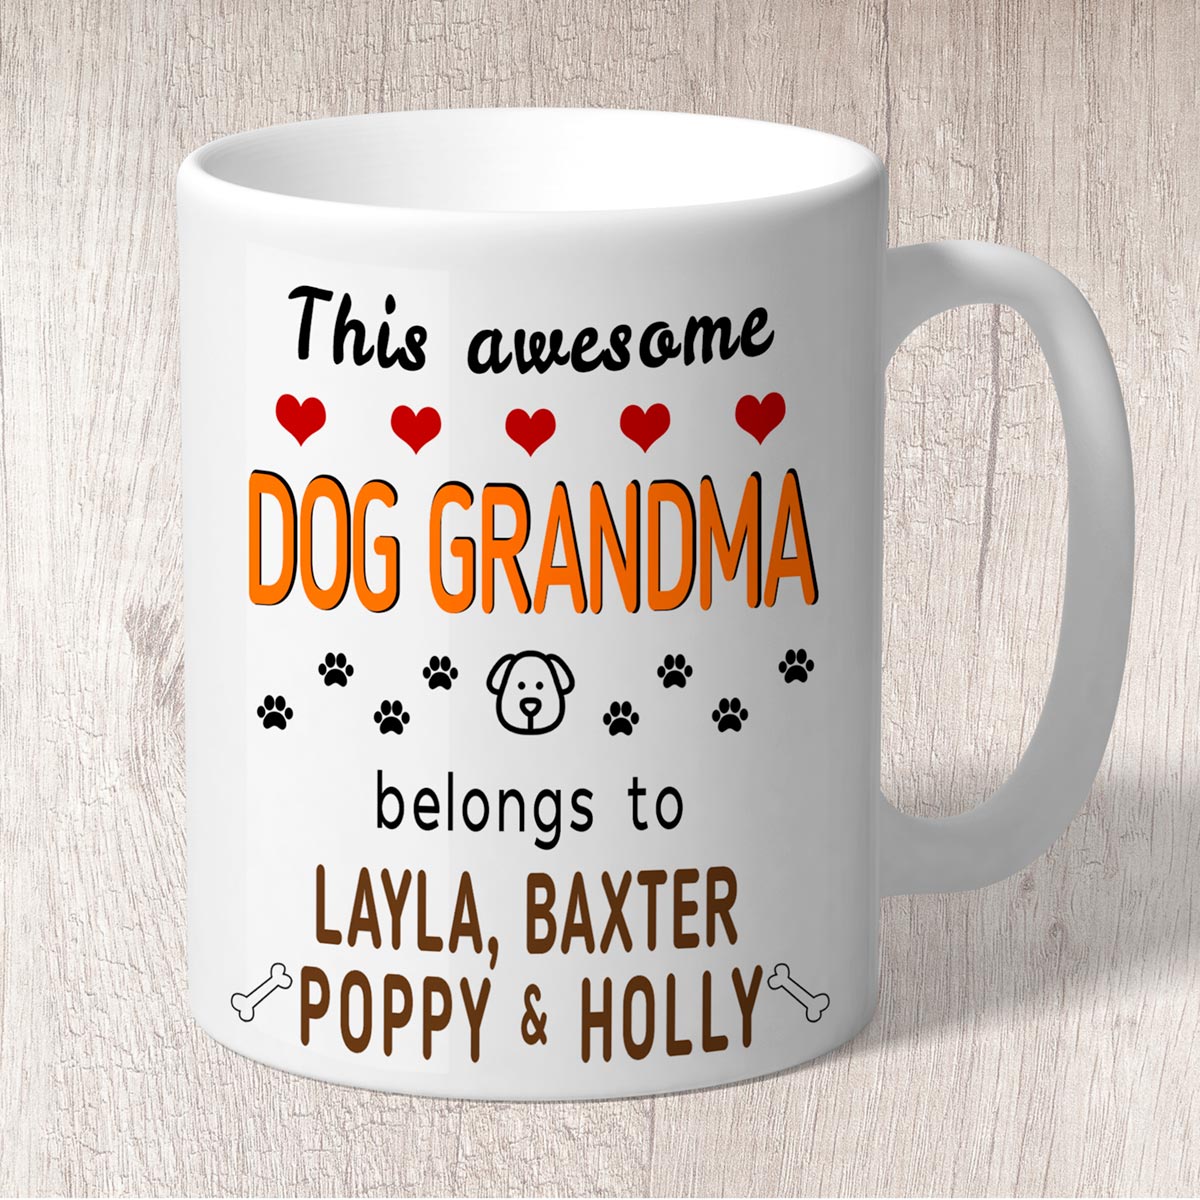 This Awesome Dog Grandma Belongs to (3-7 dog names) Mug